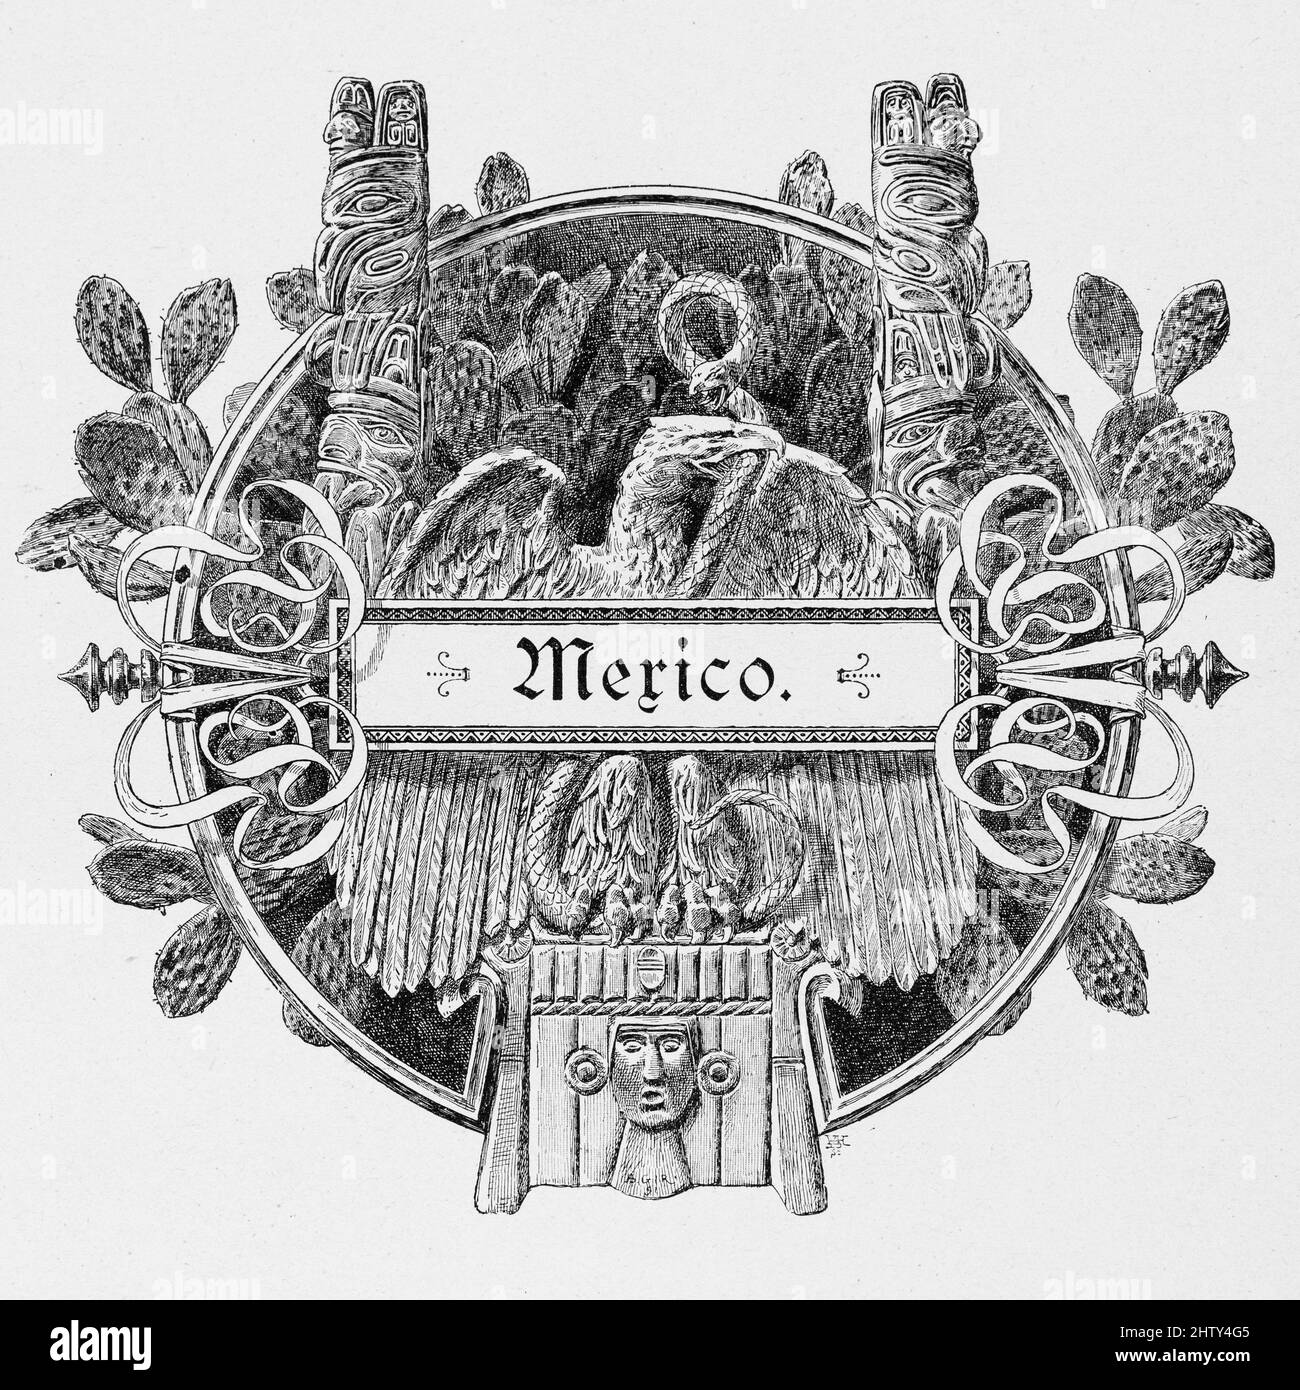 Emblème, aigle mexicain, Maya, ornements, cactus, Illustration historique de 1897, Mexico, Mexique, Amérique centrale Banque D'Images